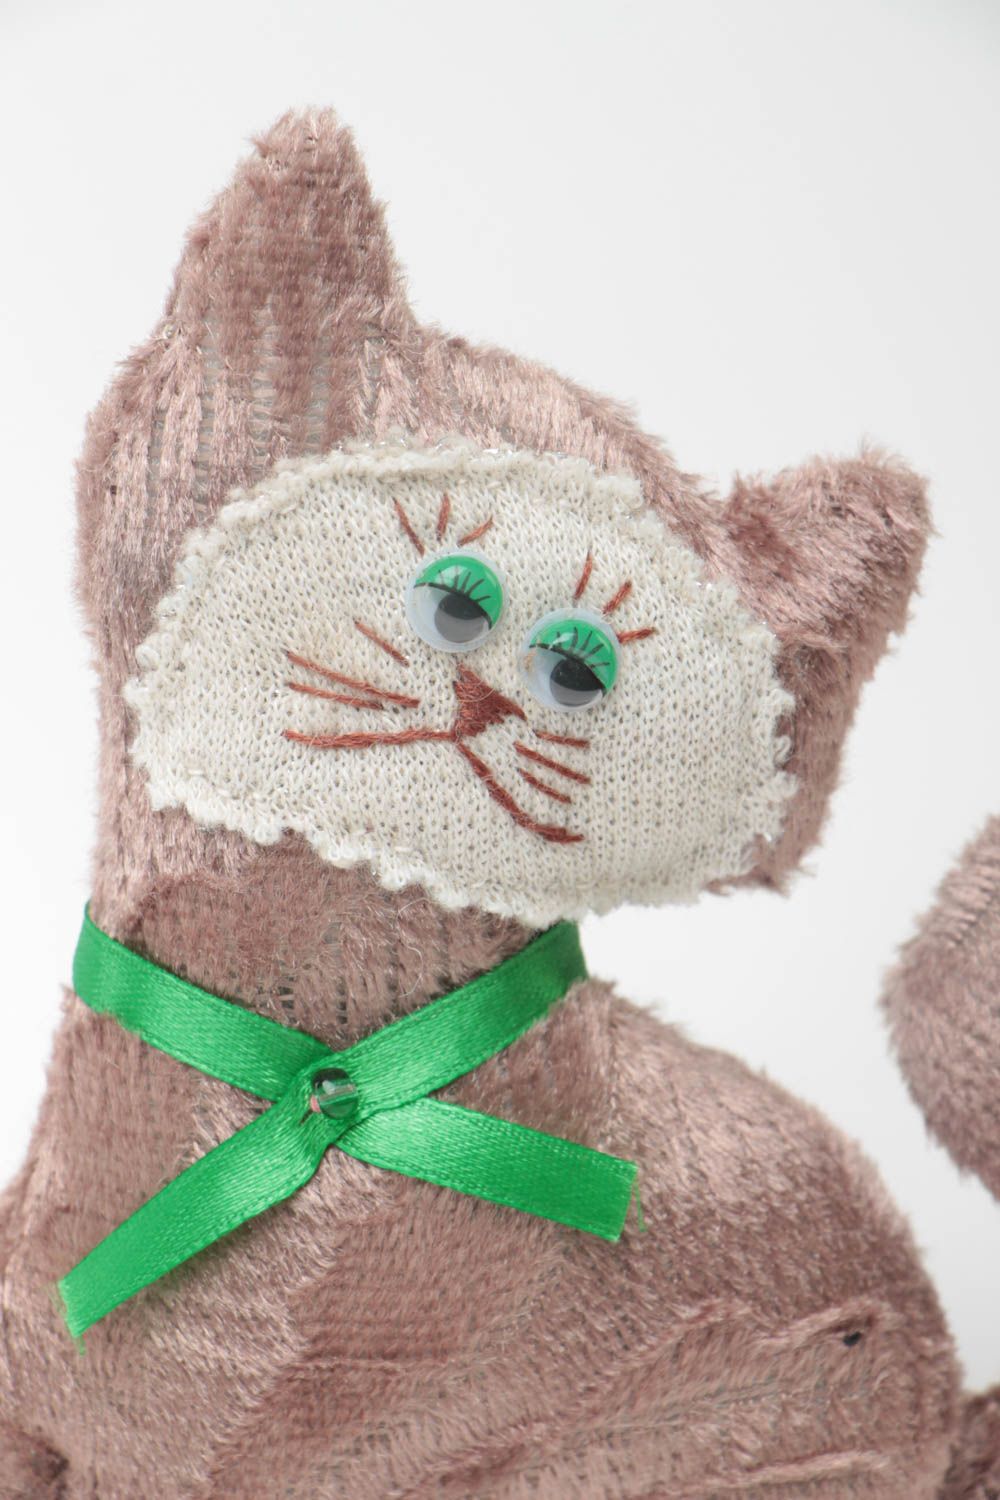 Textil Kuscheltier Kater aus Wolle weich bunt handmade Spielzeug für Kinder foto 3